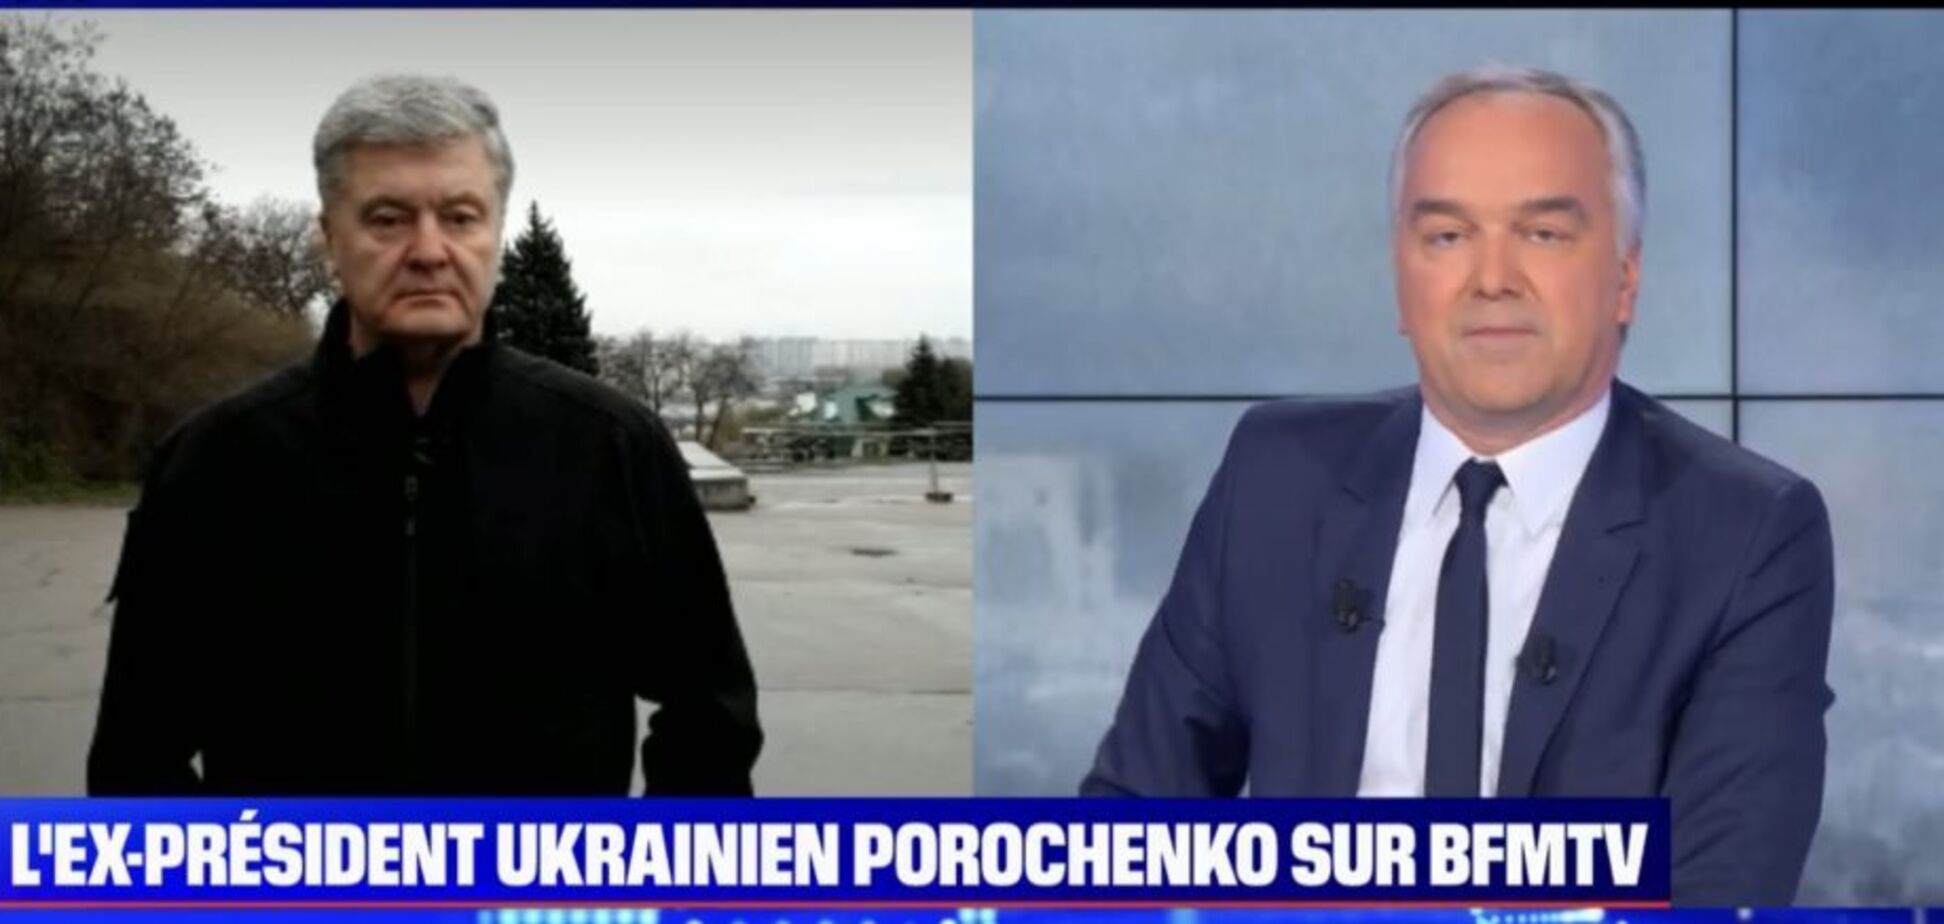 На Донбассе решается судьба Европы и всего мира, – Порошенко